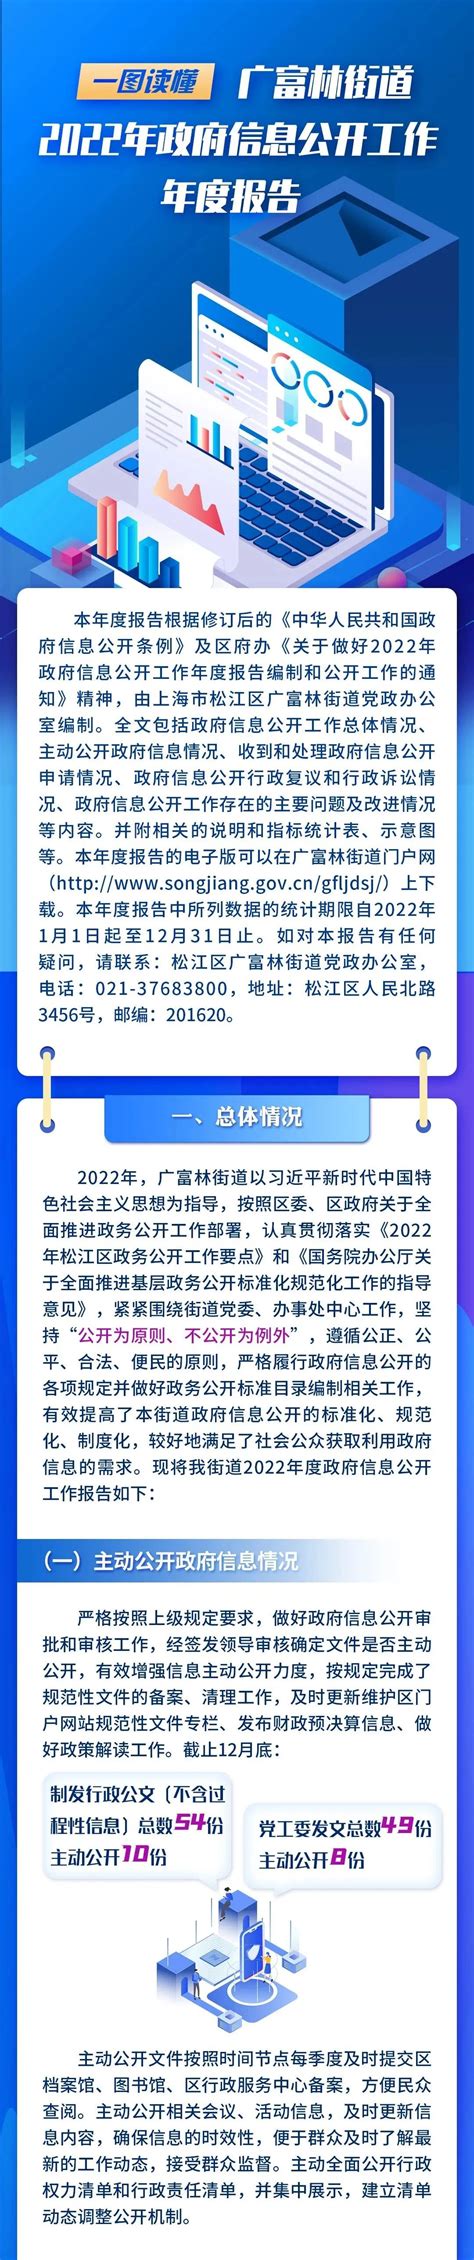 一图读懂《上海市松江区广富林街道2022年政府信息公开工作年度报告》